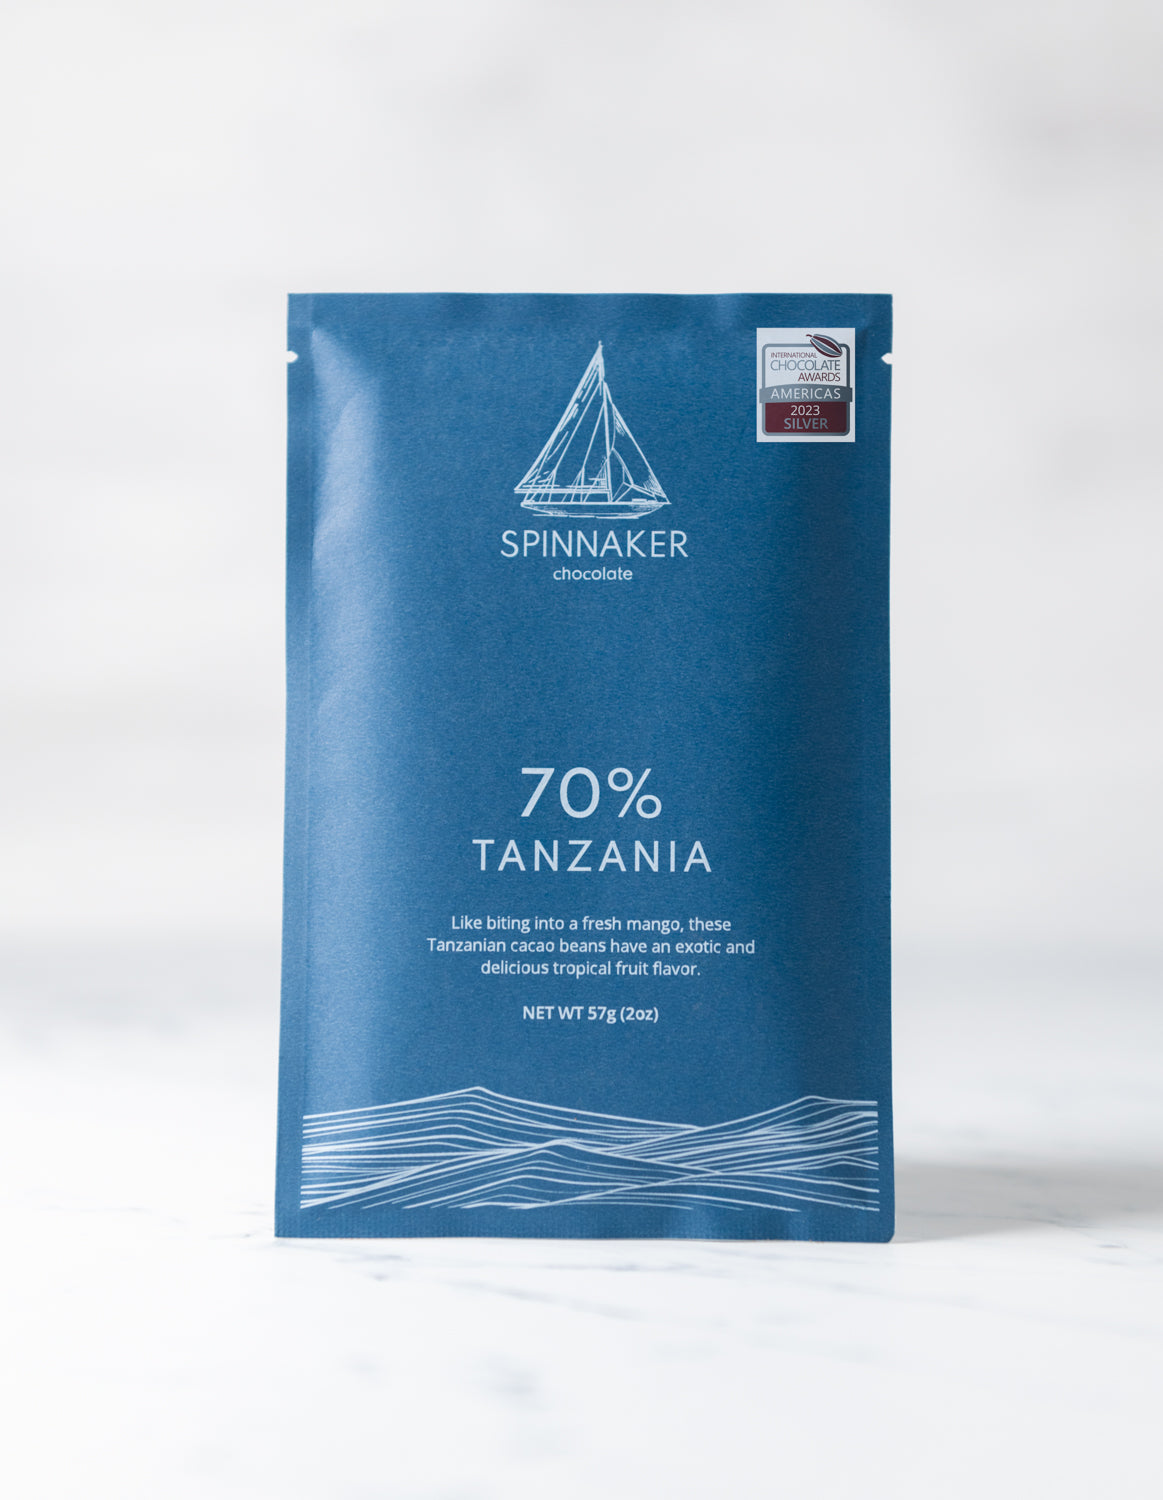 70% Tanzania